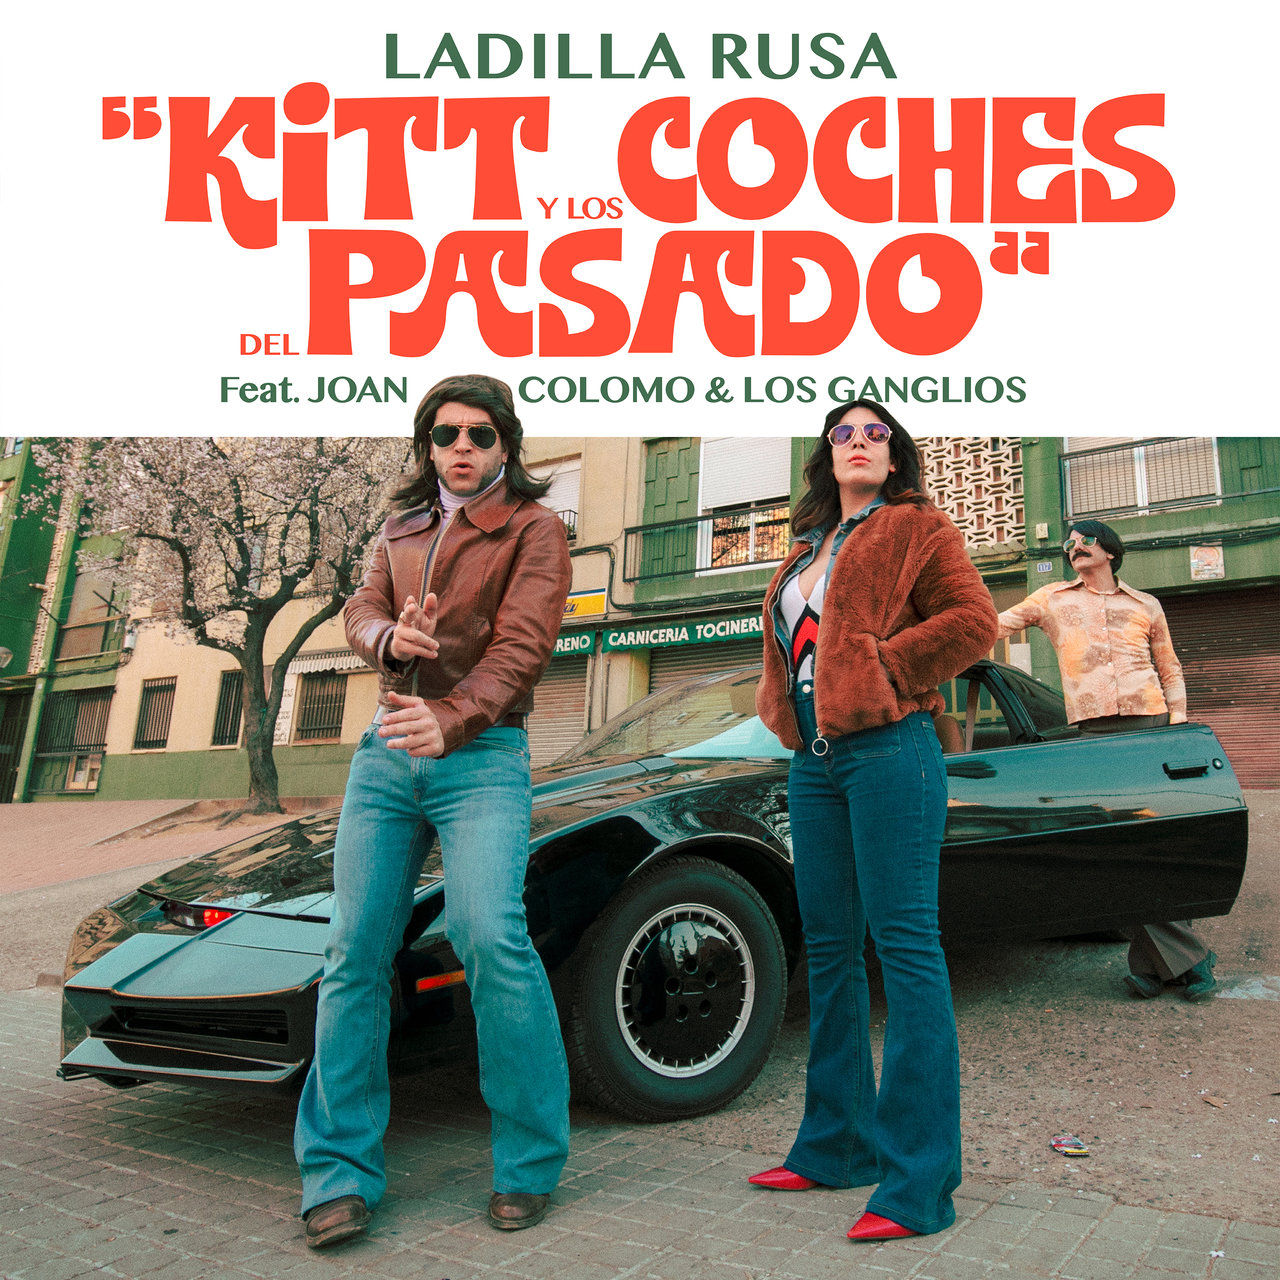 Ladilla Rusa featuring Joan Colomo & Los Ganglios — KITT y los coches del pasado cover artwork